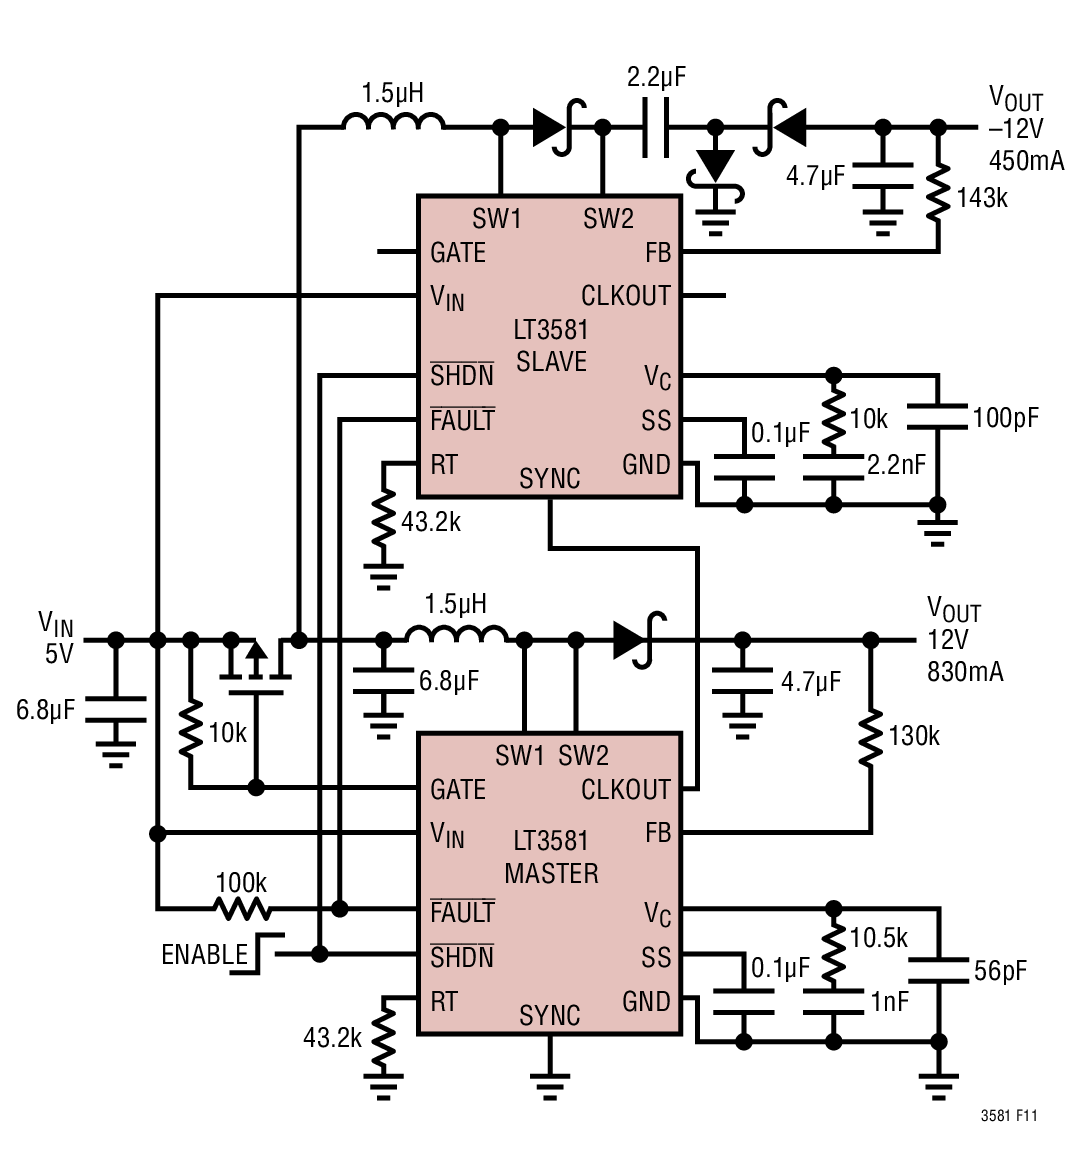 Ćuk转换器和反相电荷泵转换器两者的优势和权衡